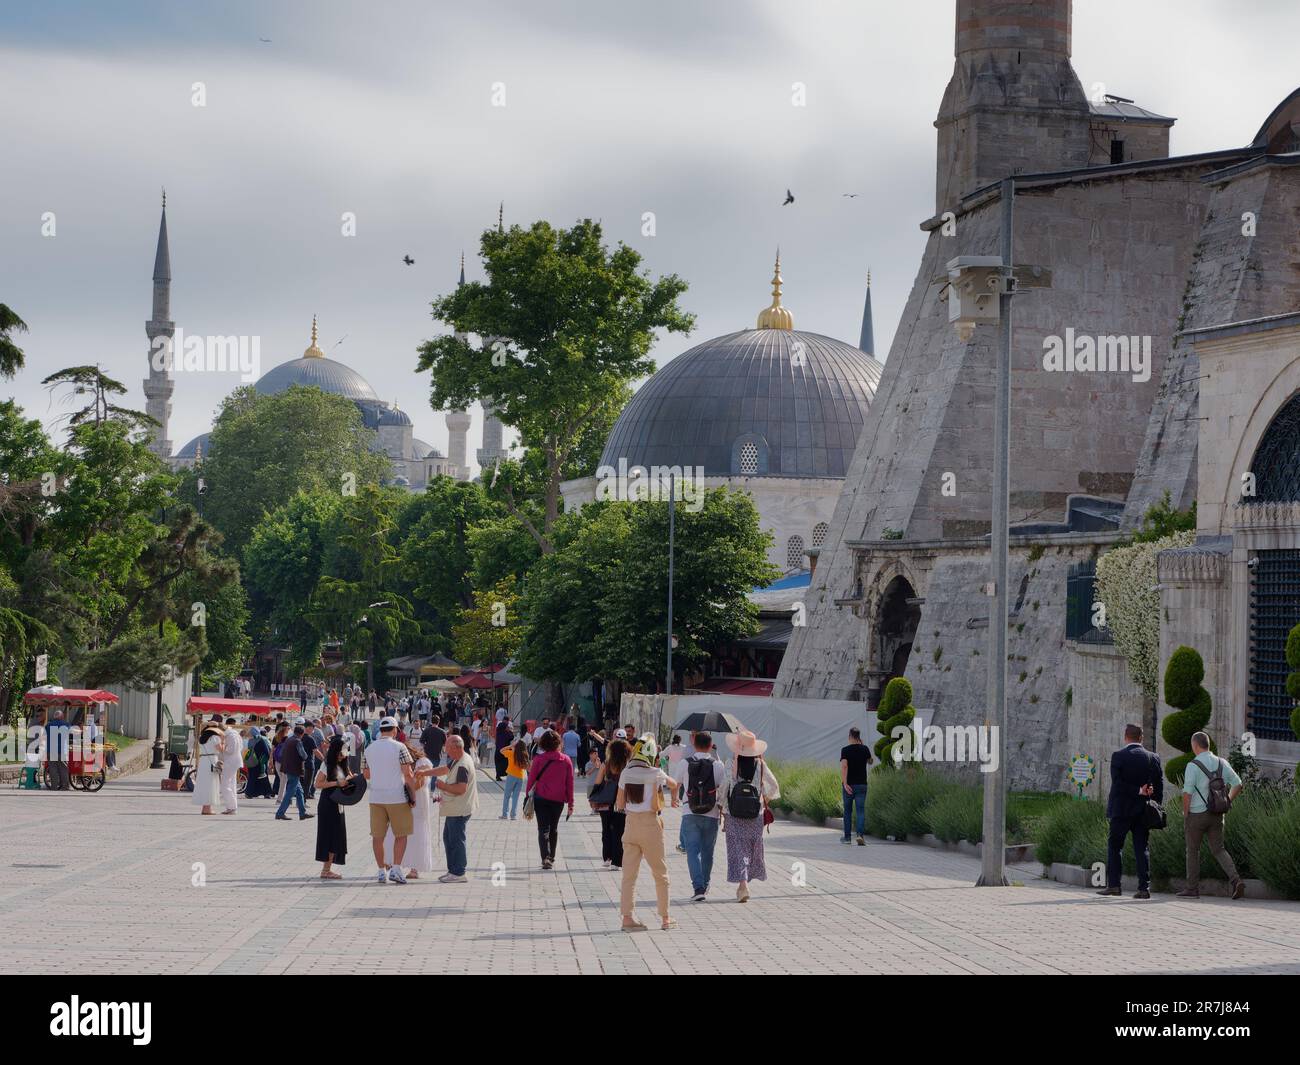 Visiteurs à côté de la mosquée Sainte-Sophie et du Sultan Ahmed (alias Mosquée Bleue), Istanbul, Turquie. Les chariots distributeurs rouges vendent des simit aka des bagels turcs Banque D'Images